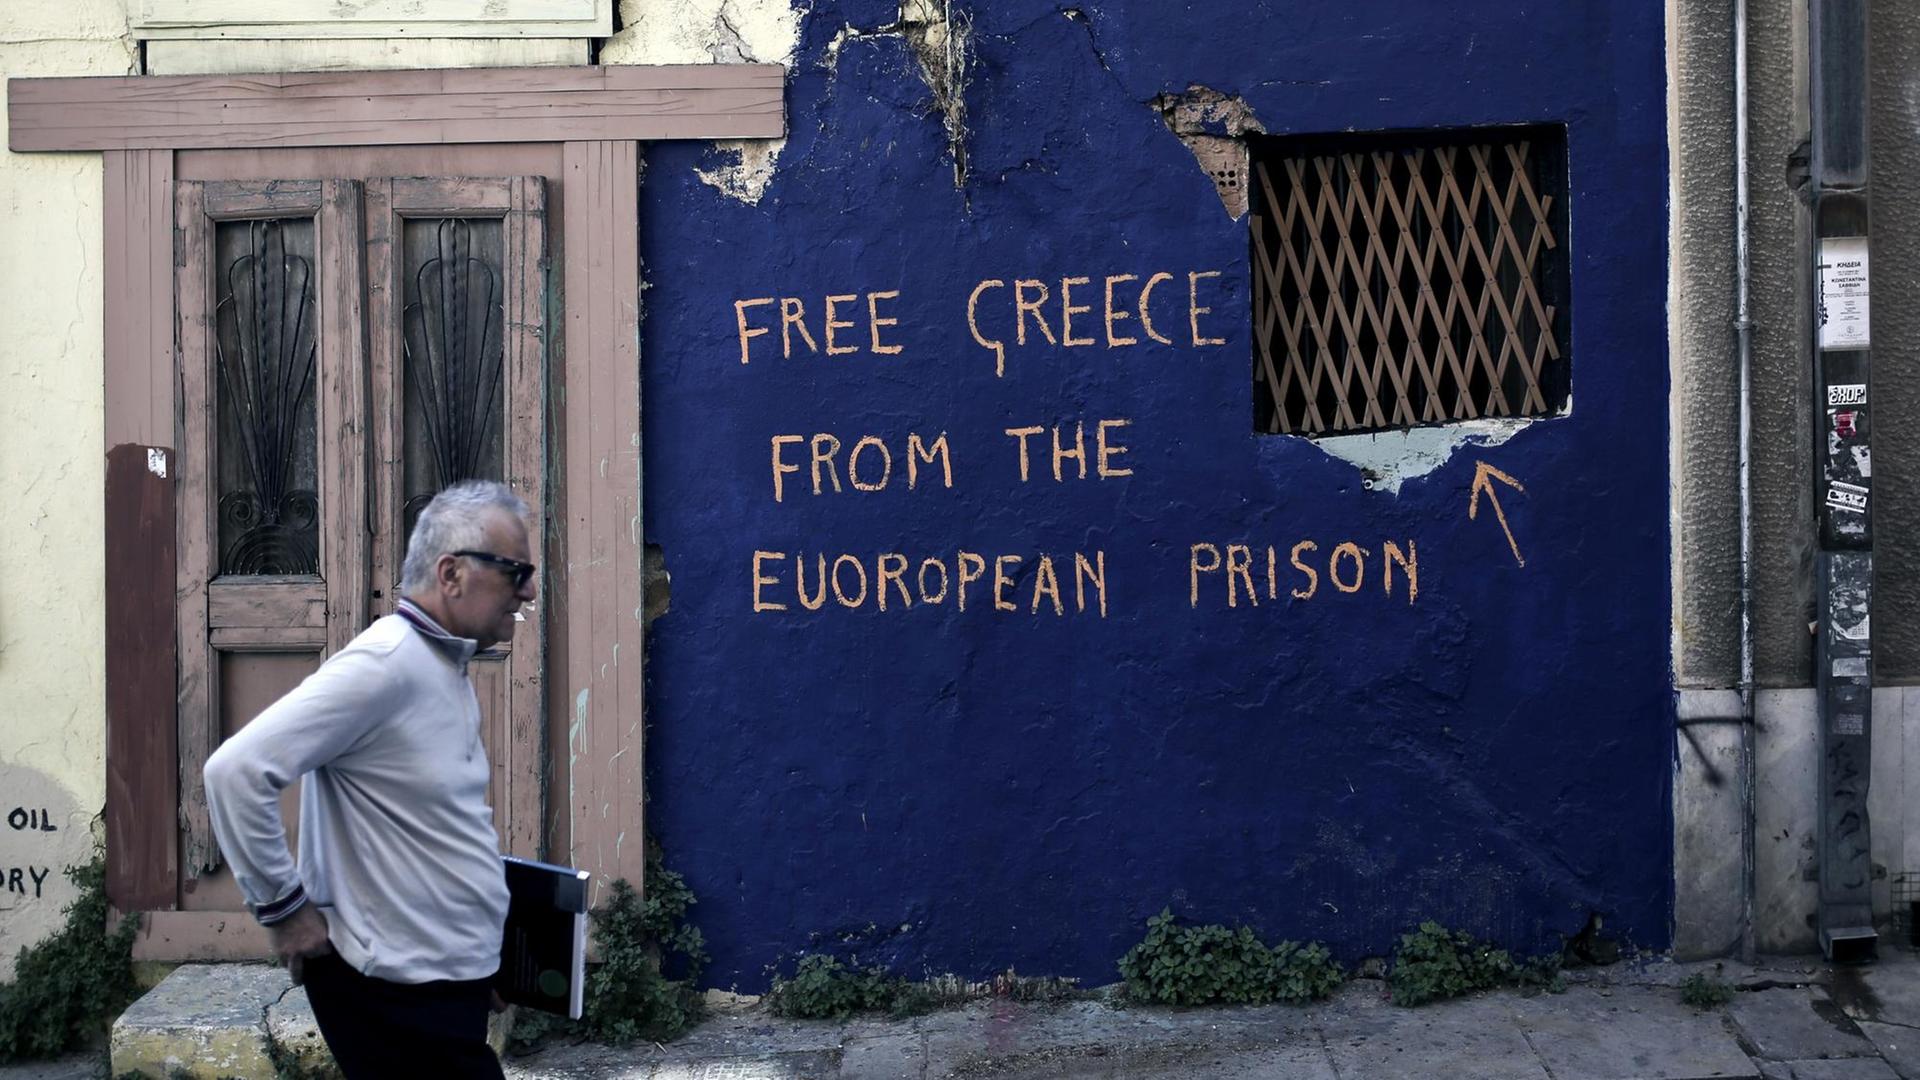 "Befreit Griechenland aus dem Euro-Gefängnis": Ein Grafito an einem leer stehenden Haus in Athen